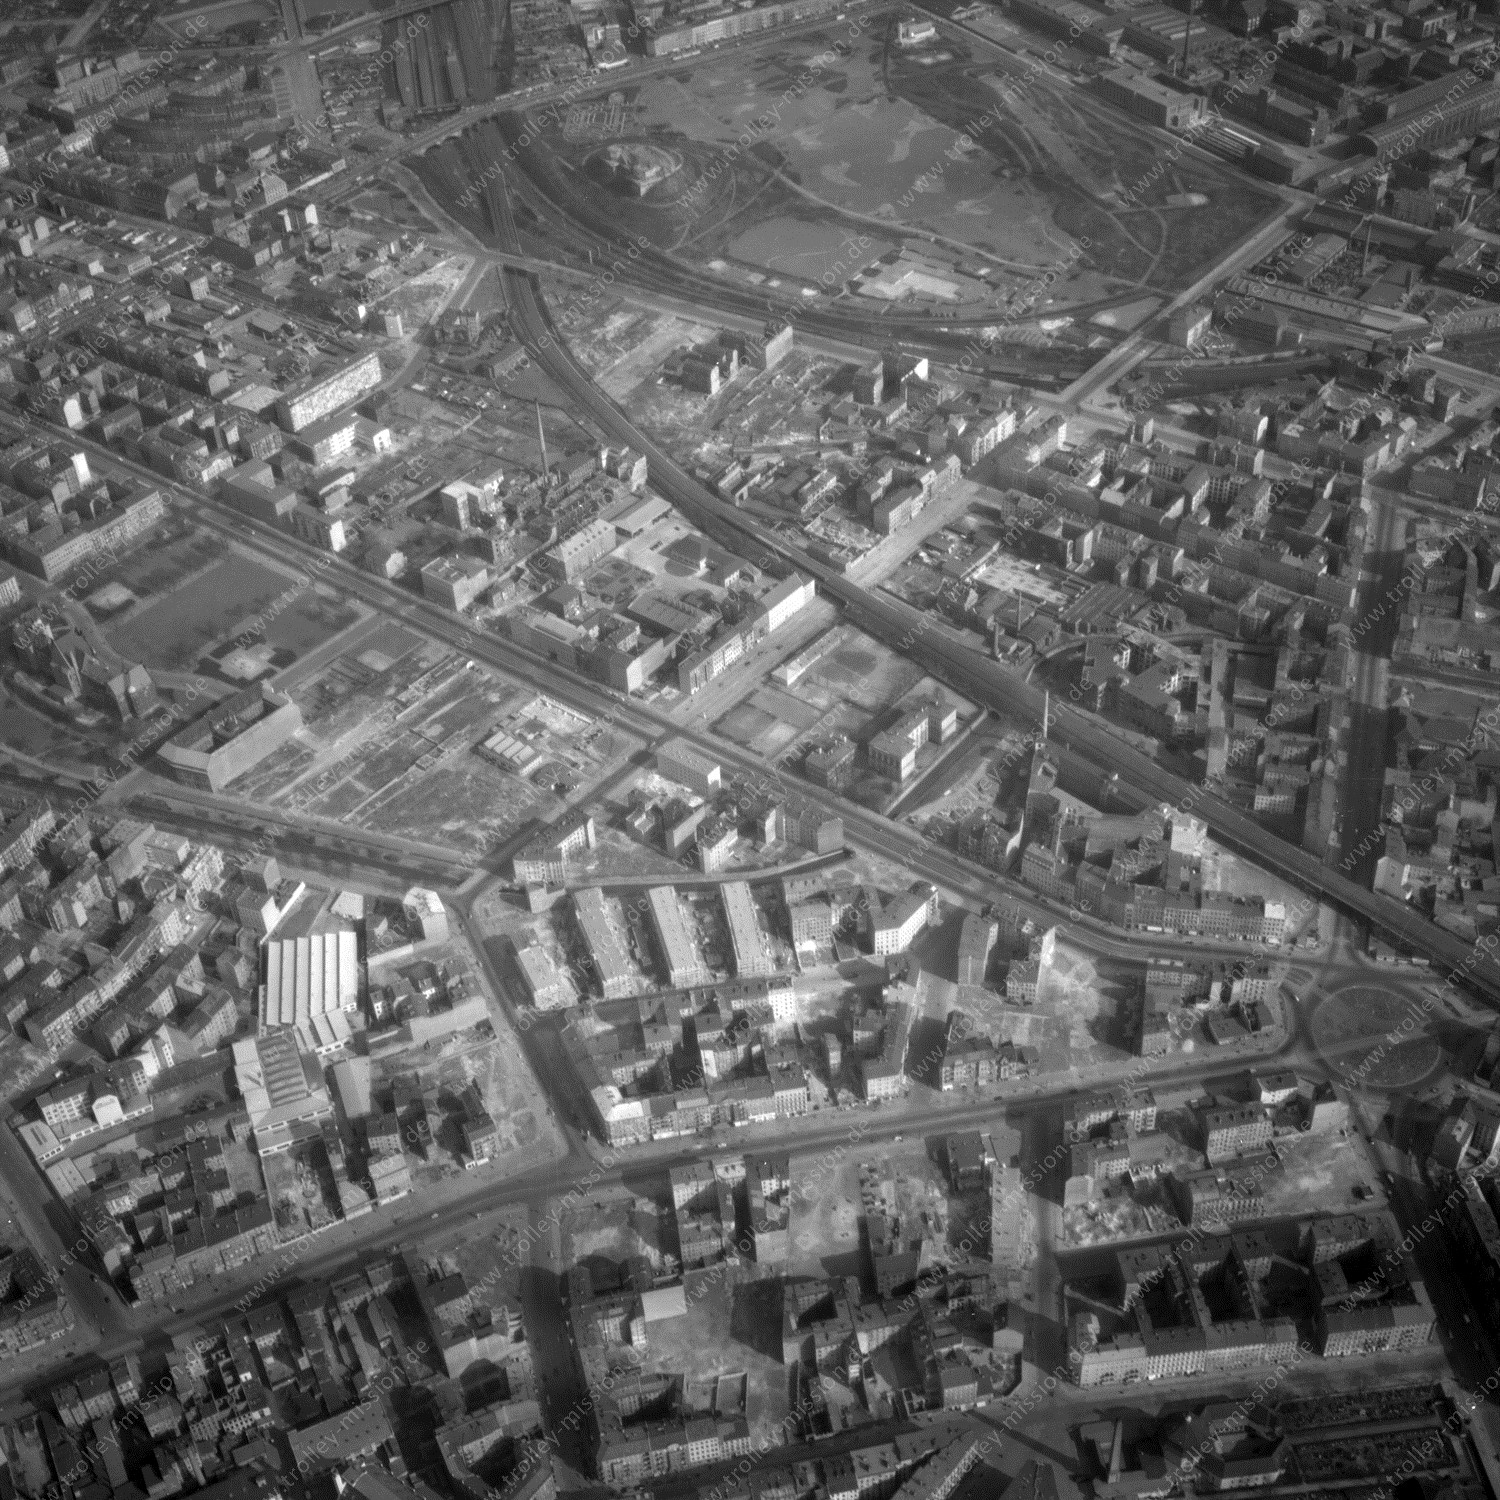 Alte Fotos und Luftbilder von Berlin - Luftbildaufnahme Nr. 07 - Historische Luftaufnahmen von West-Berlin aus dem Jahr 1954 - Flugstrecke Quebec